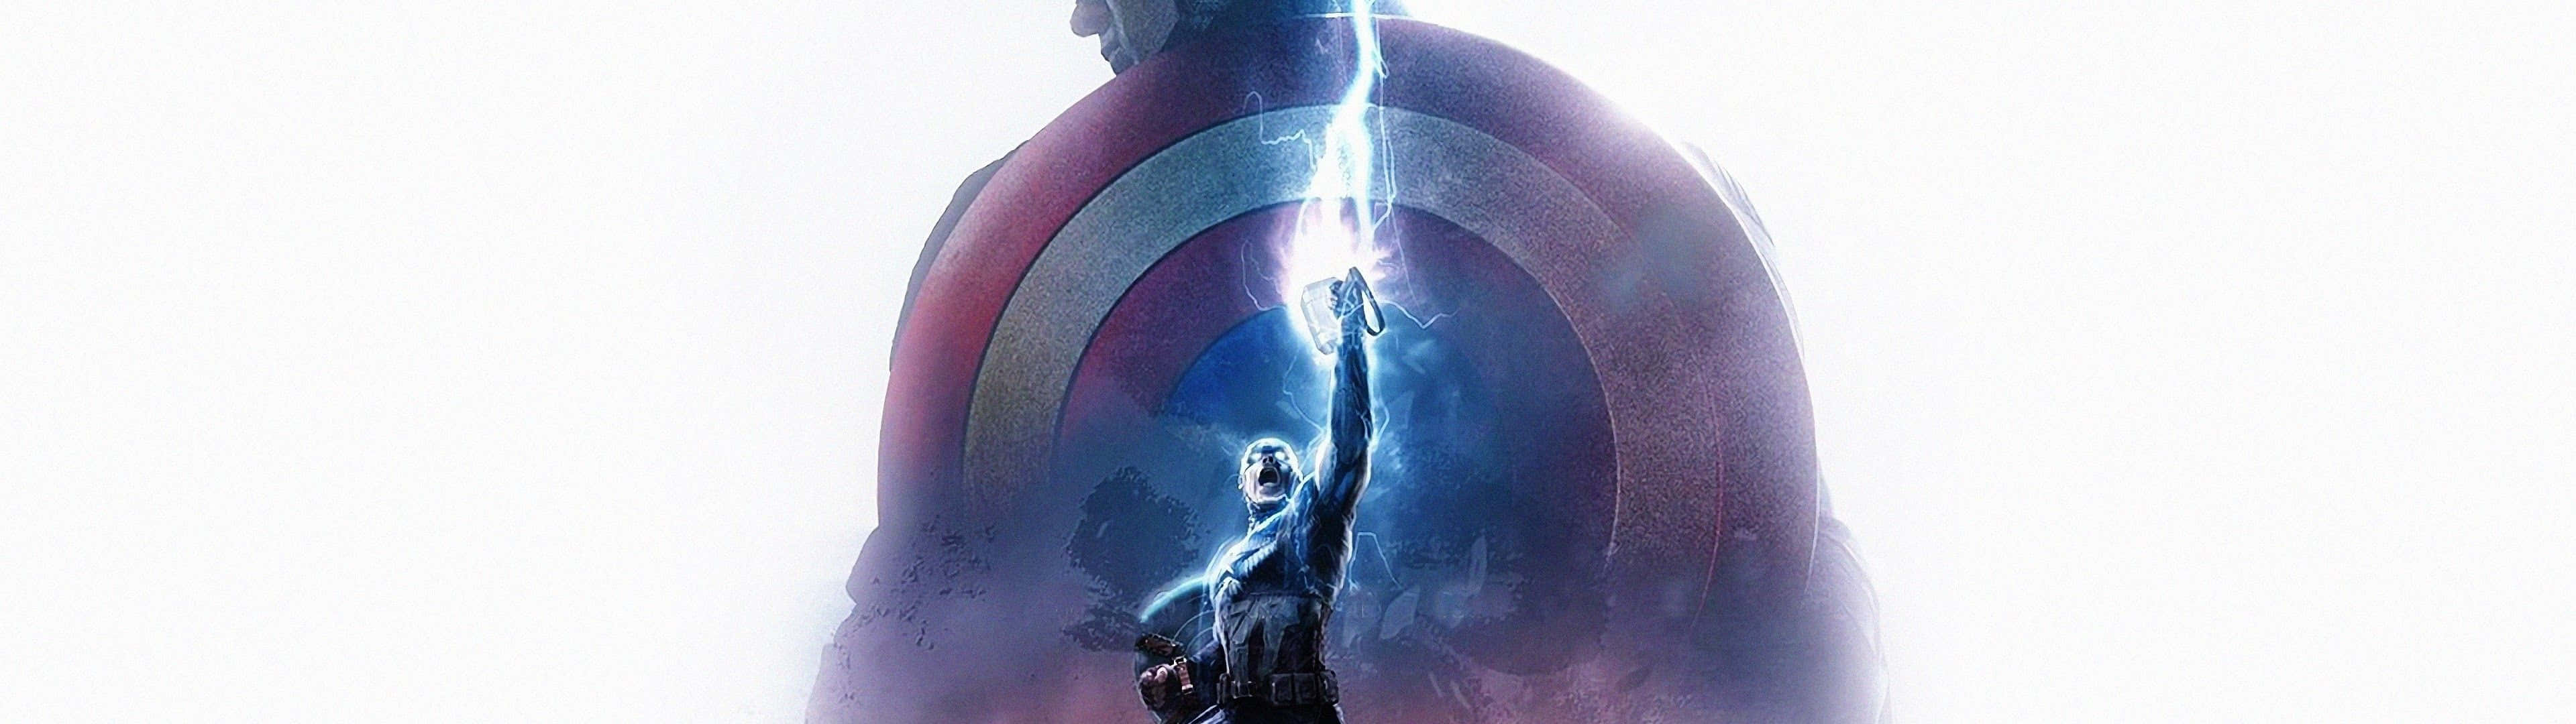 Varpatriotisk Och Inspirerad Denna 4:e Juli Med Captain America Dual Screen Wallpaper! Wallpaper